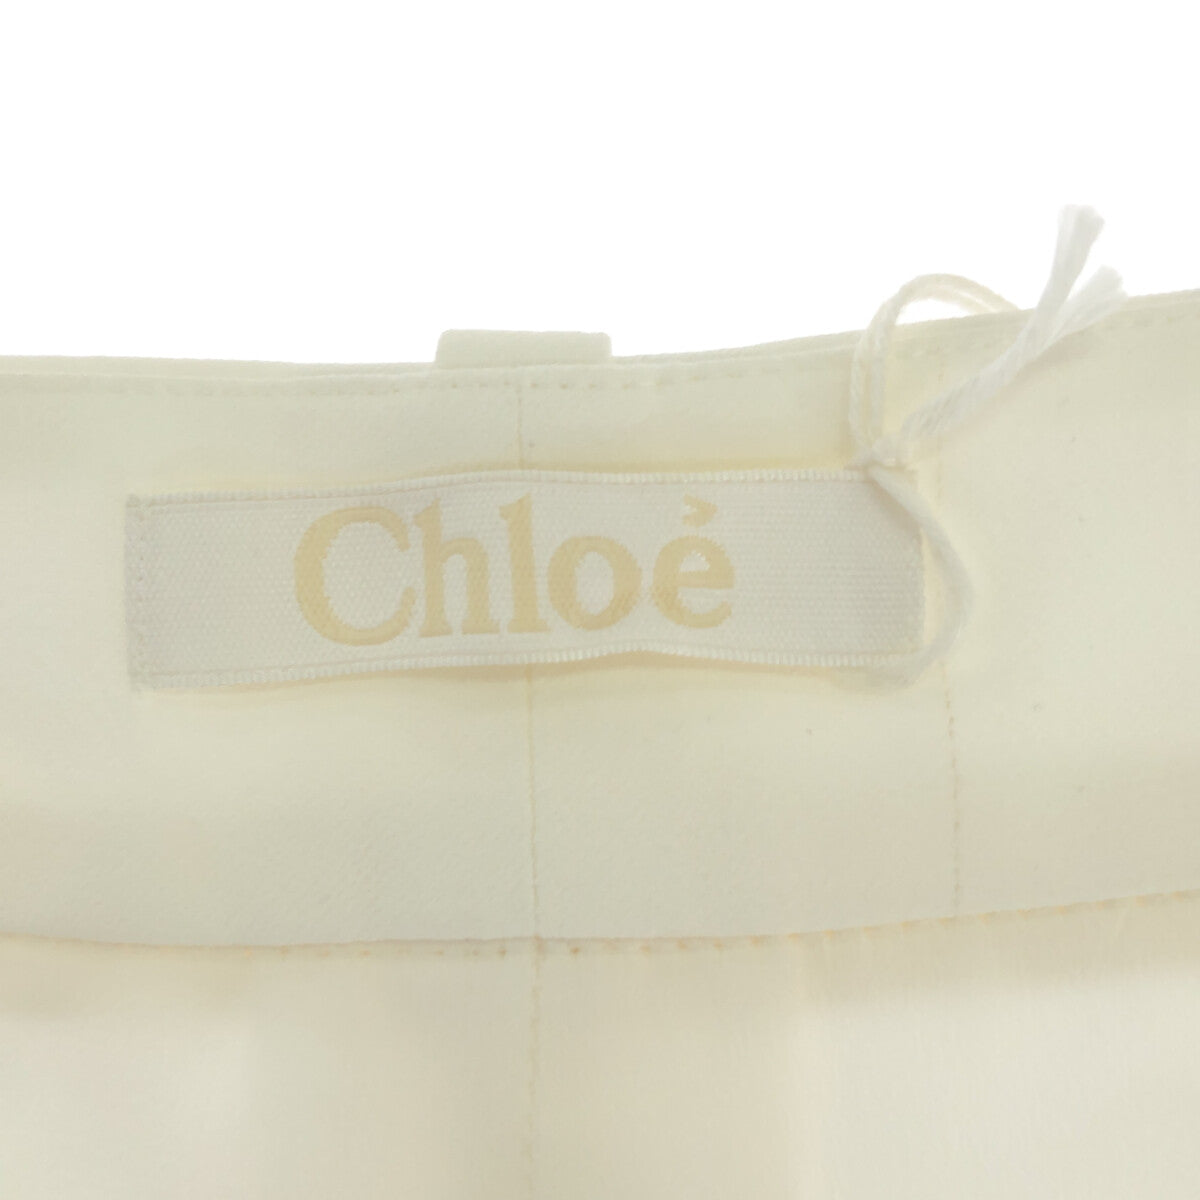 Chloe / クロエ | ワイドポケット テーパードパンツ | 36 | ホワイト | レディース